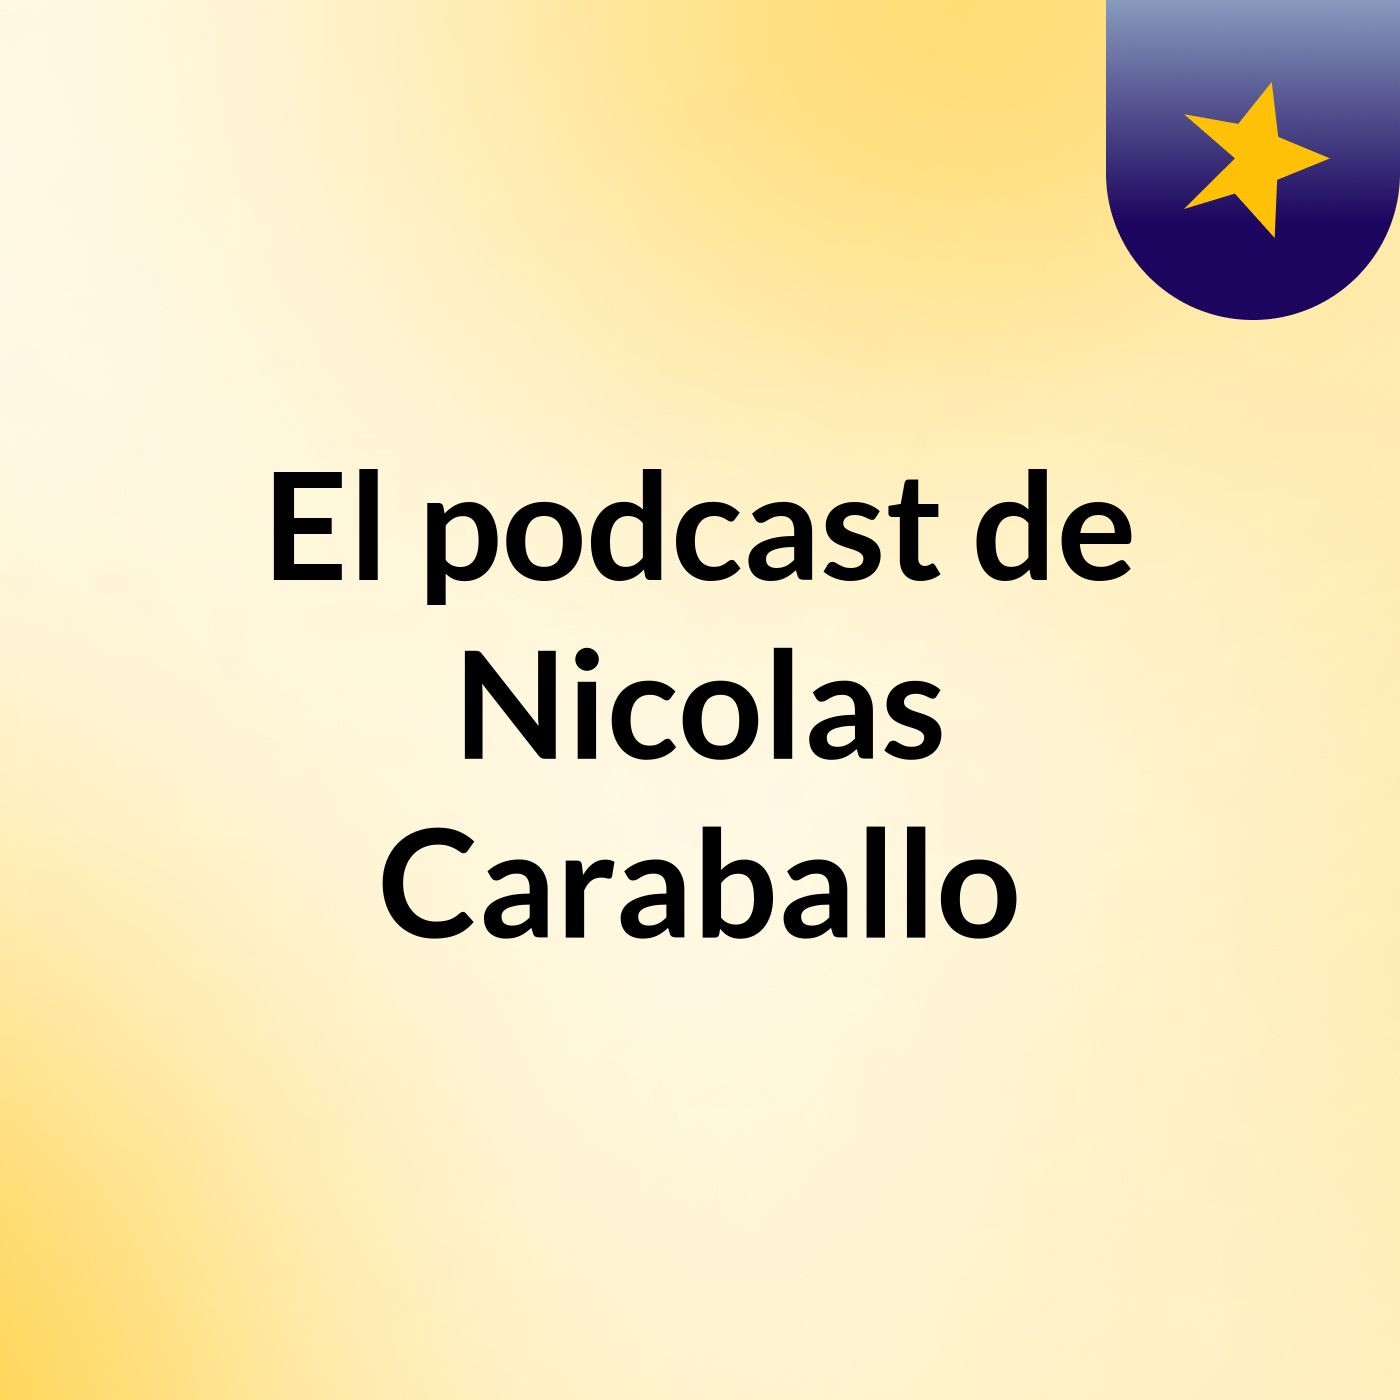 Episodio 38 - El podcast de Nicolas Caraballo